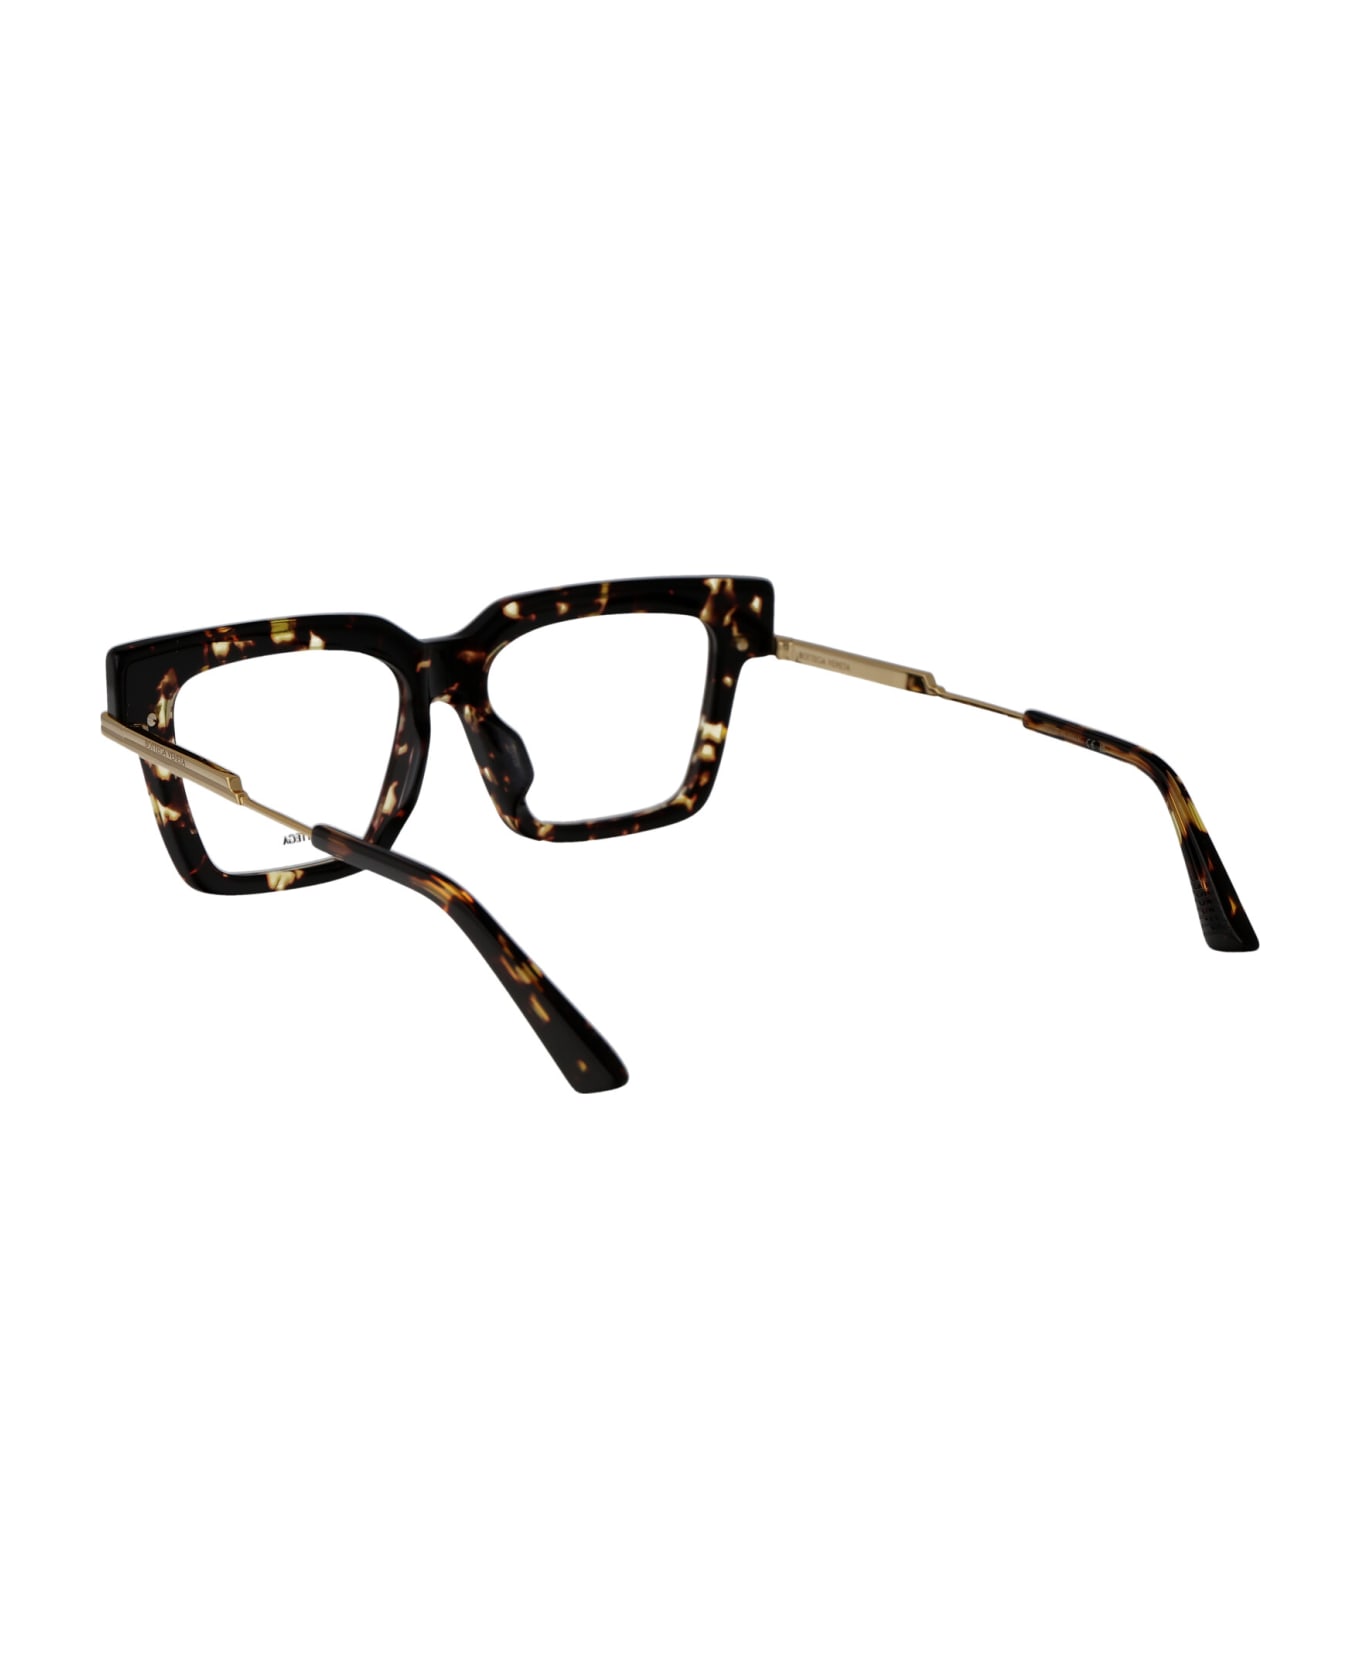 Bottega Veneta Eyewear Bv1243o Glasses - 002 HAVANA GOLD TRANSPARENT